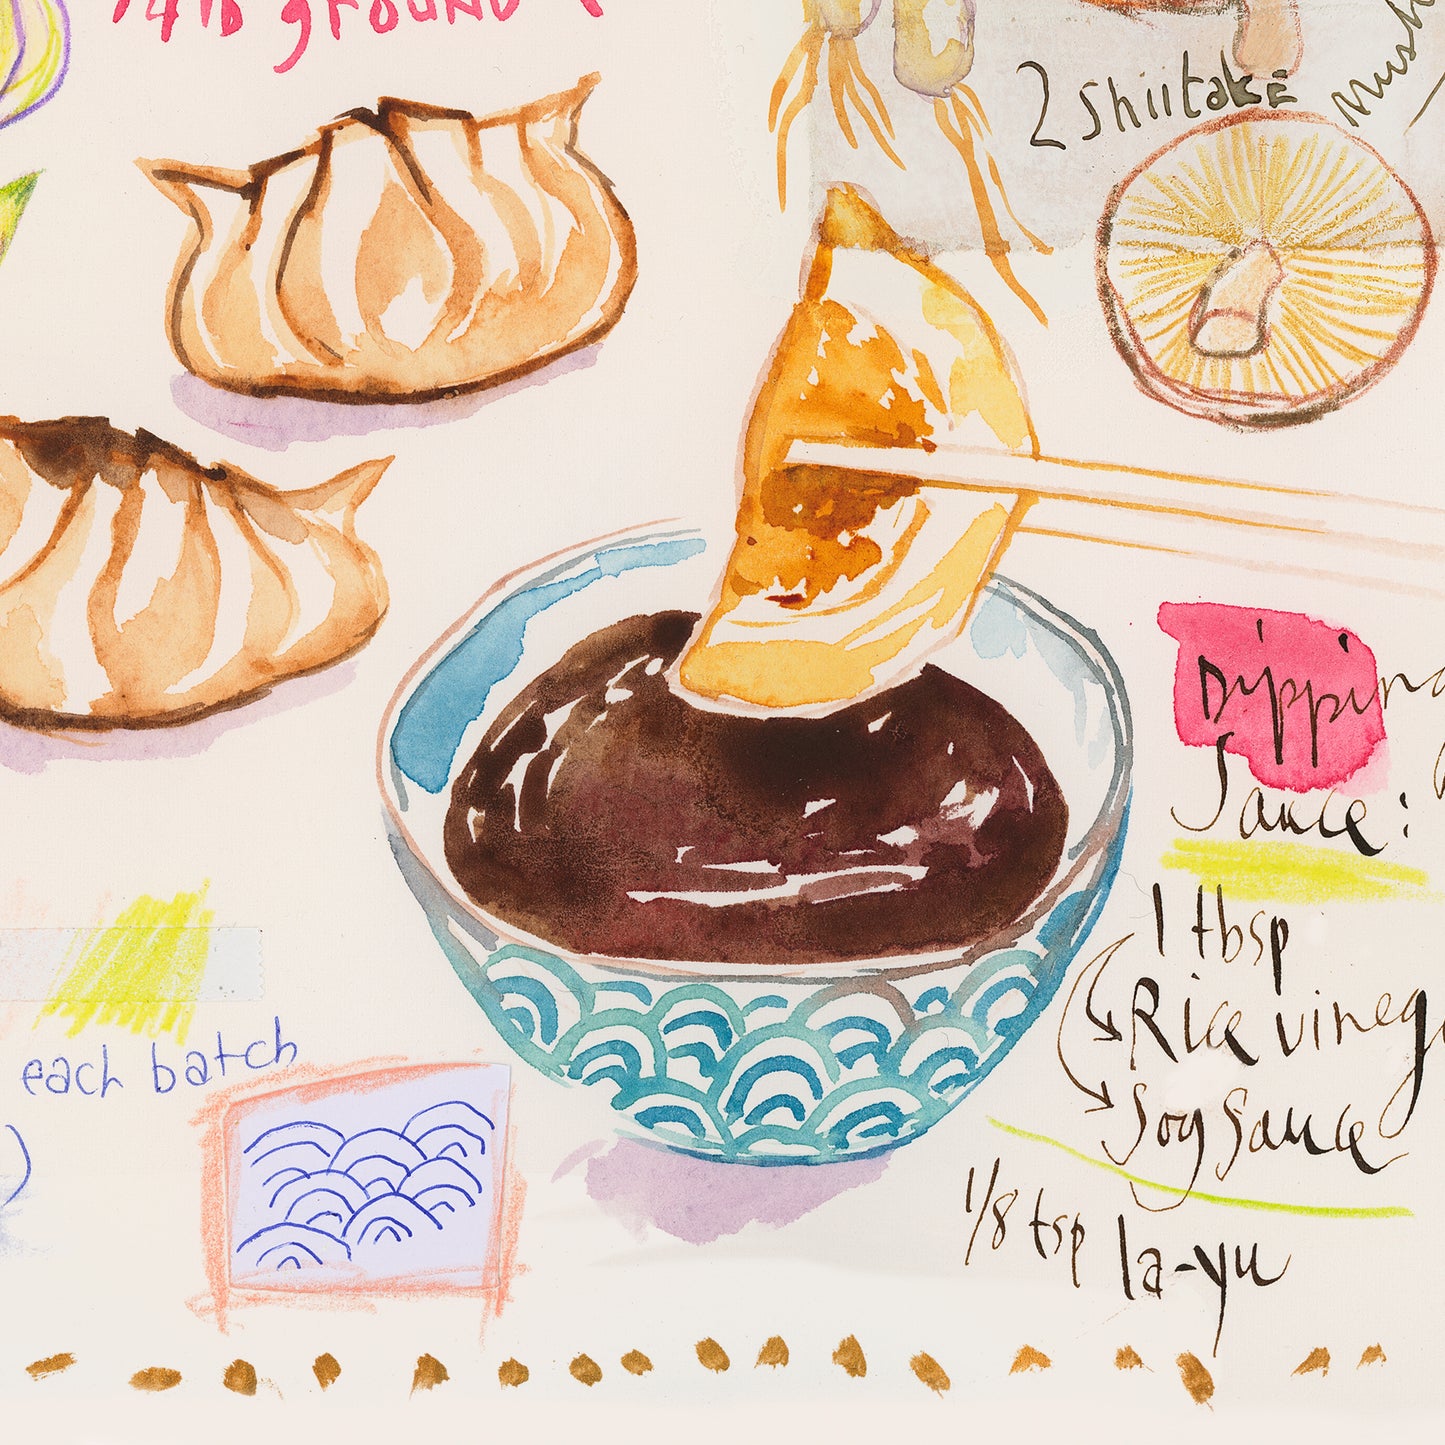 Dumpling recipe poster - Gyoza